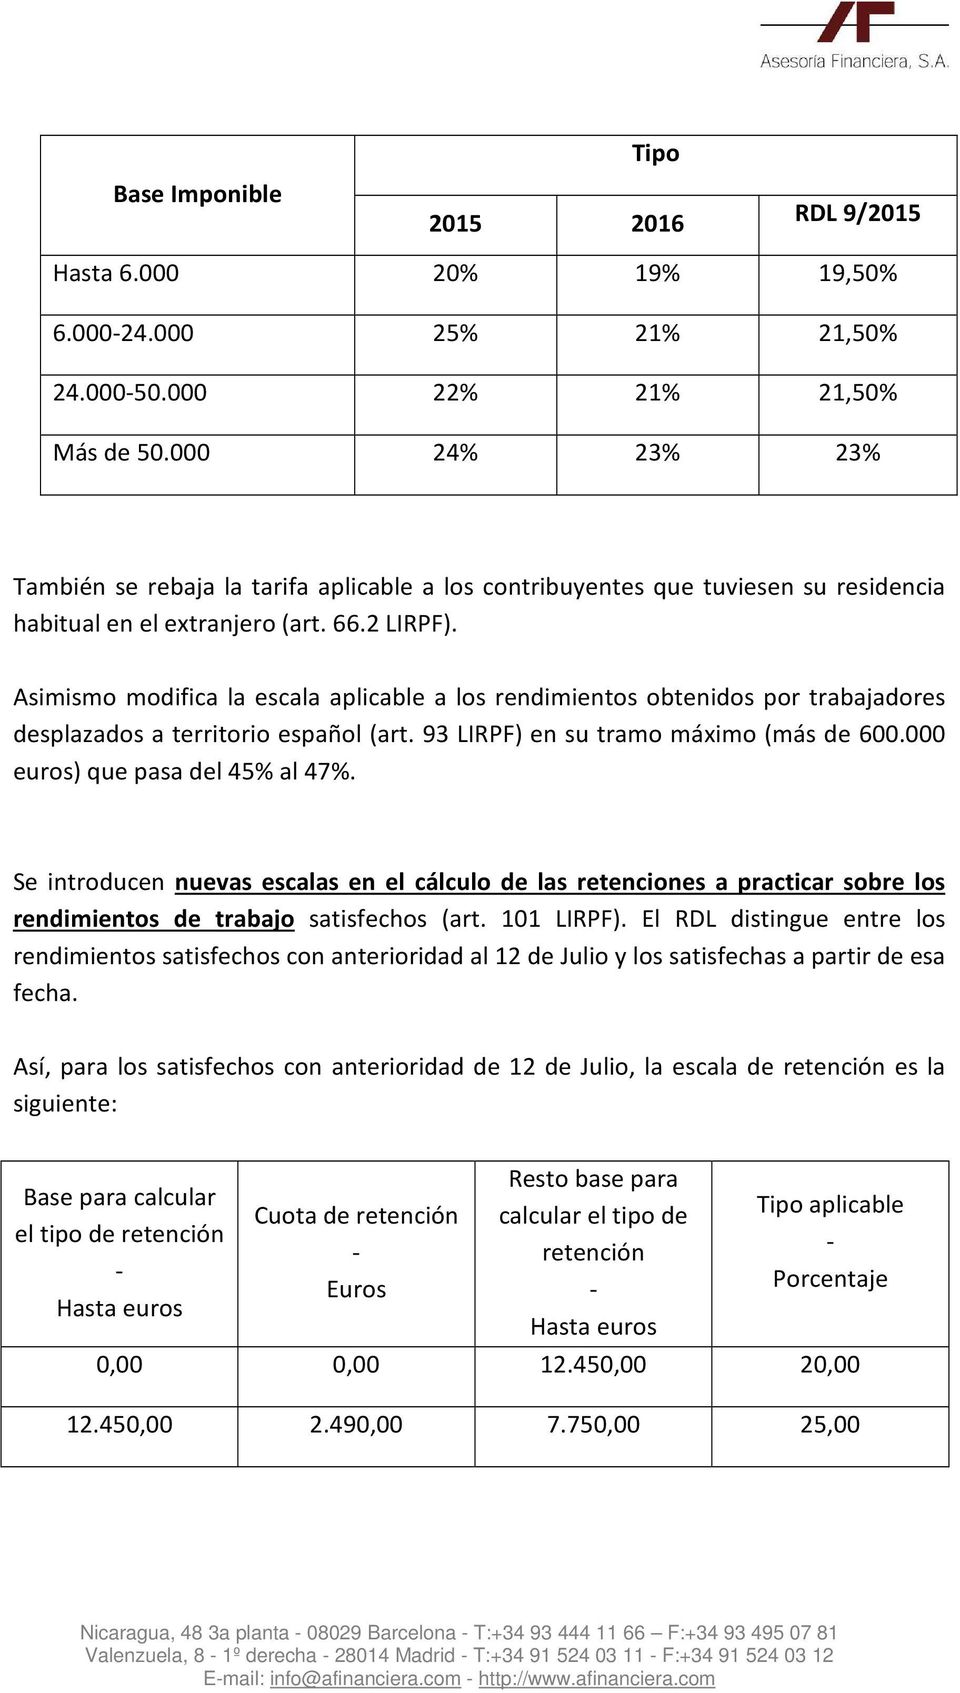 Asimismo modifica la escala aplicable a los rendimientos obtenidos por trabajadores desplazados a territorio español (art. 93 LIRPF) en su tramo máximo (más de 600.000 euros) que pasa del 45% al 47%.